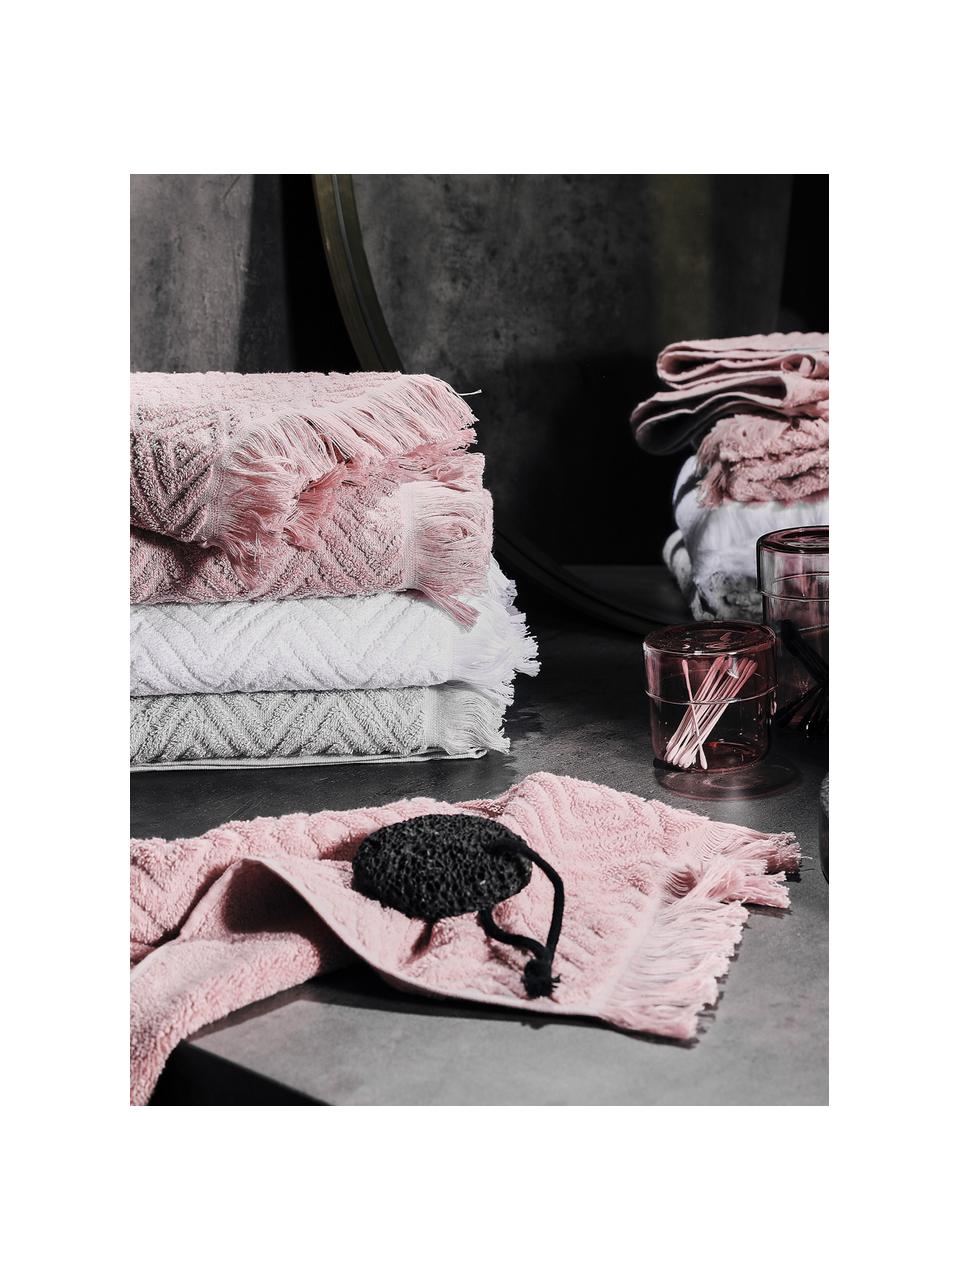 Set 3 asciugamani con motivo alto-basso Jacqui, 100% cotone, qualità media 490 g/m², Rosa, Set in varie misure